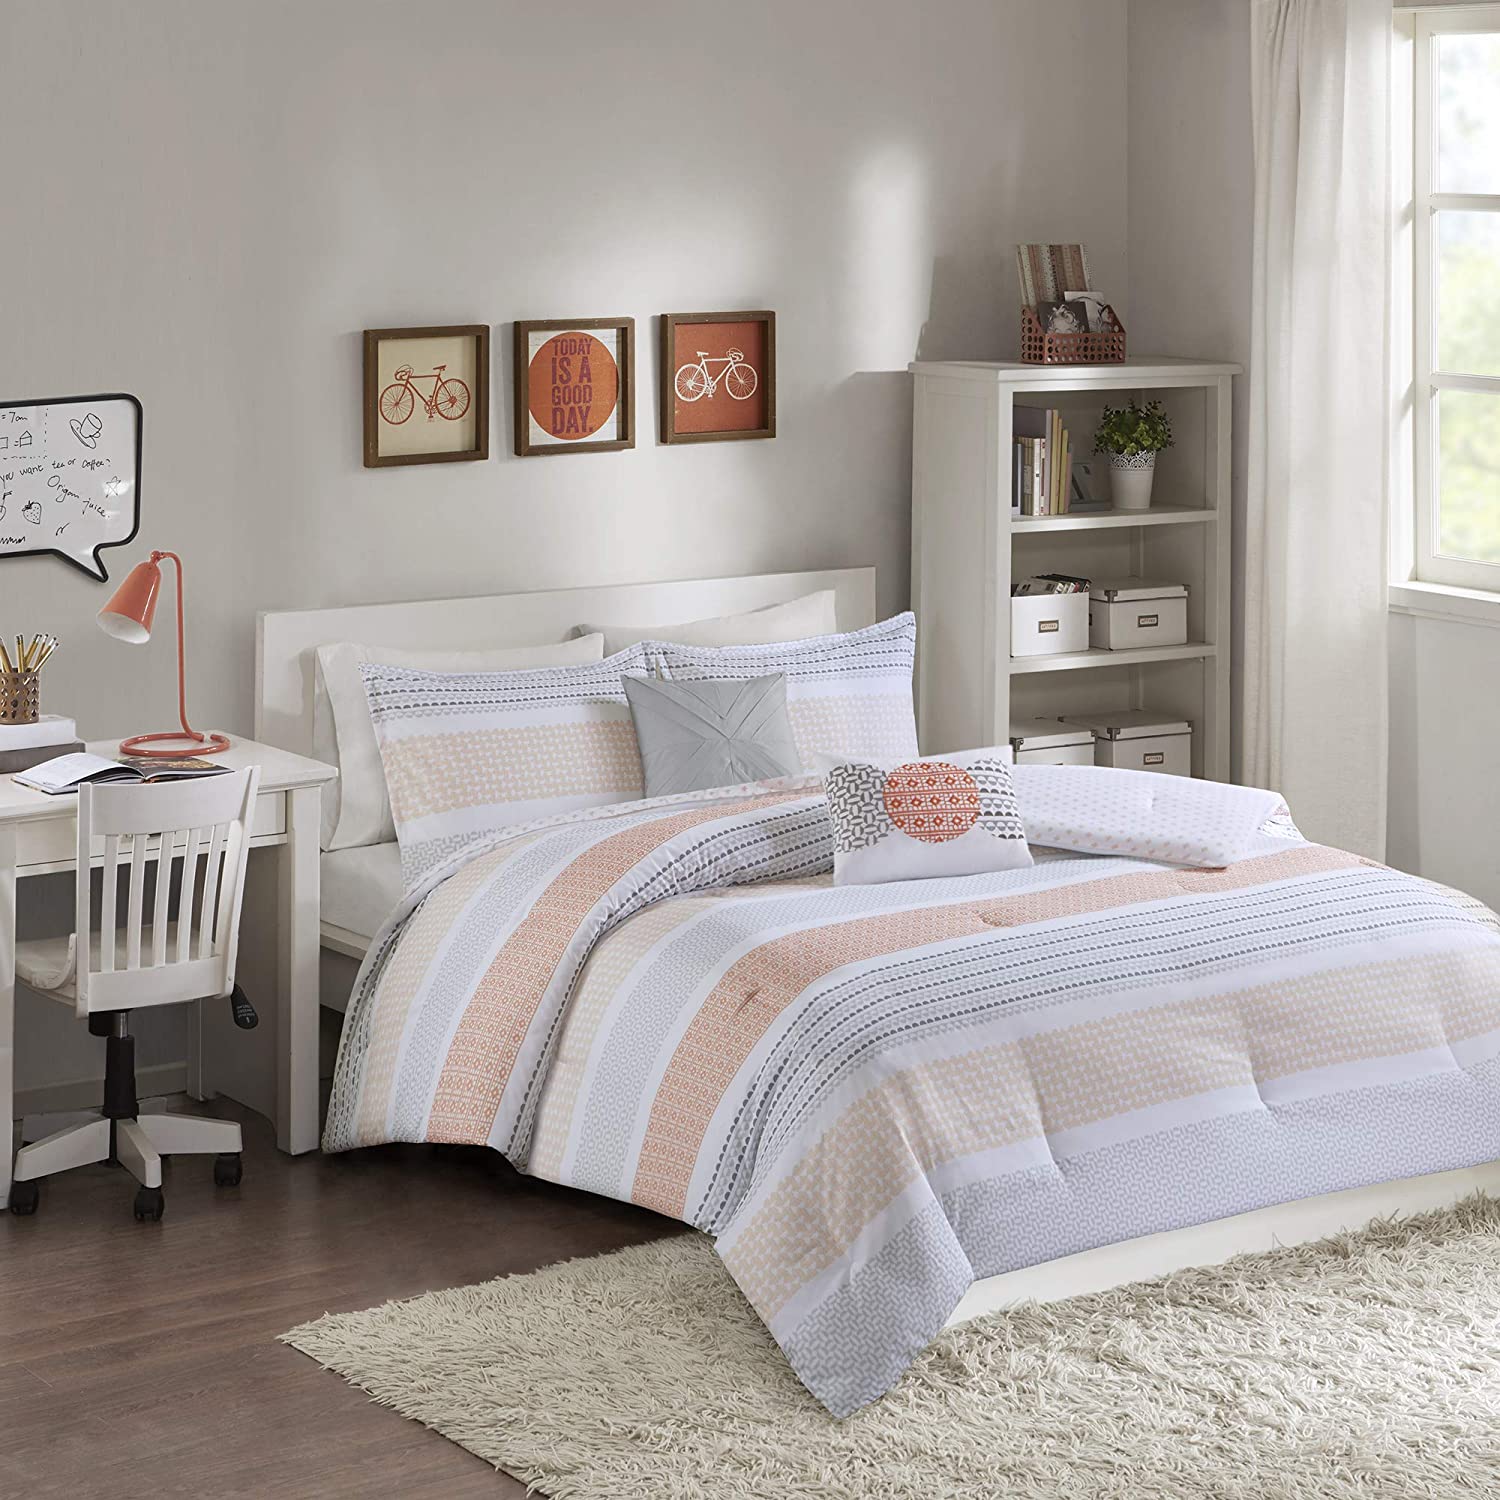 Intelligent Design Wilson 5 Piece Reversible Geometric Stripe Comforter Teen Bedroom Bedding Sets, Full/Queen Size, Coral